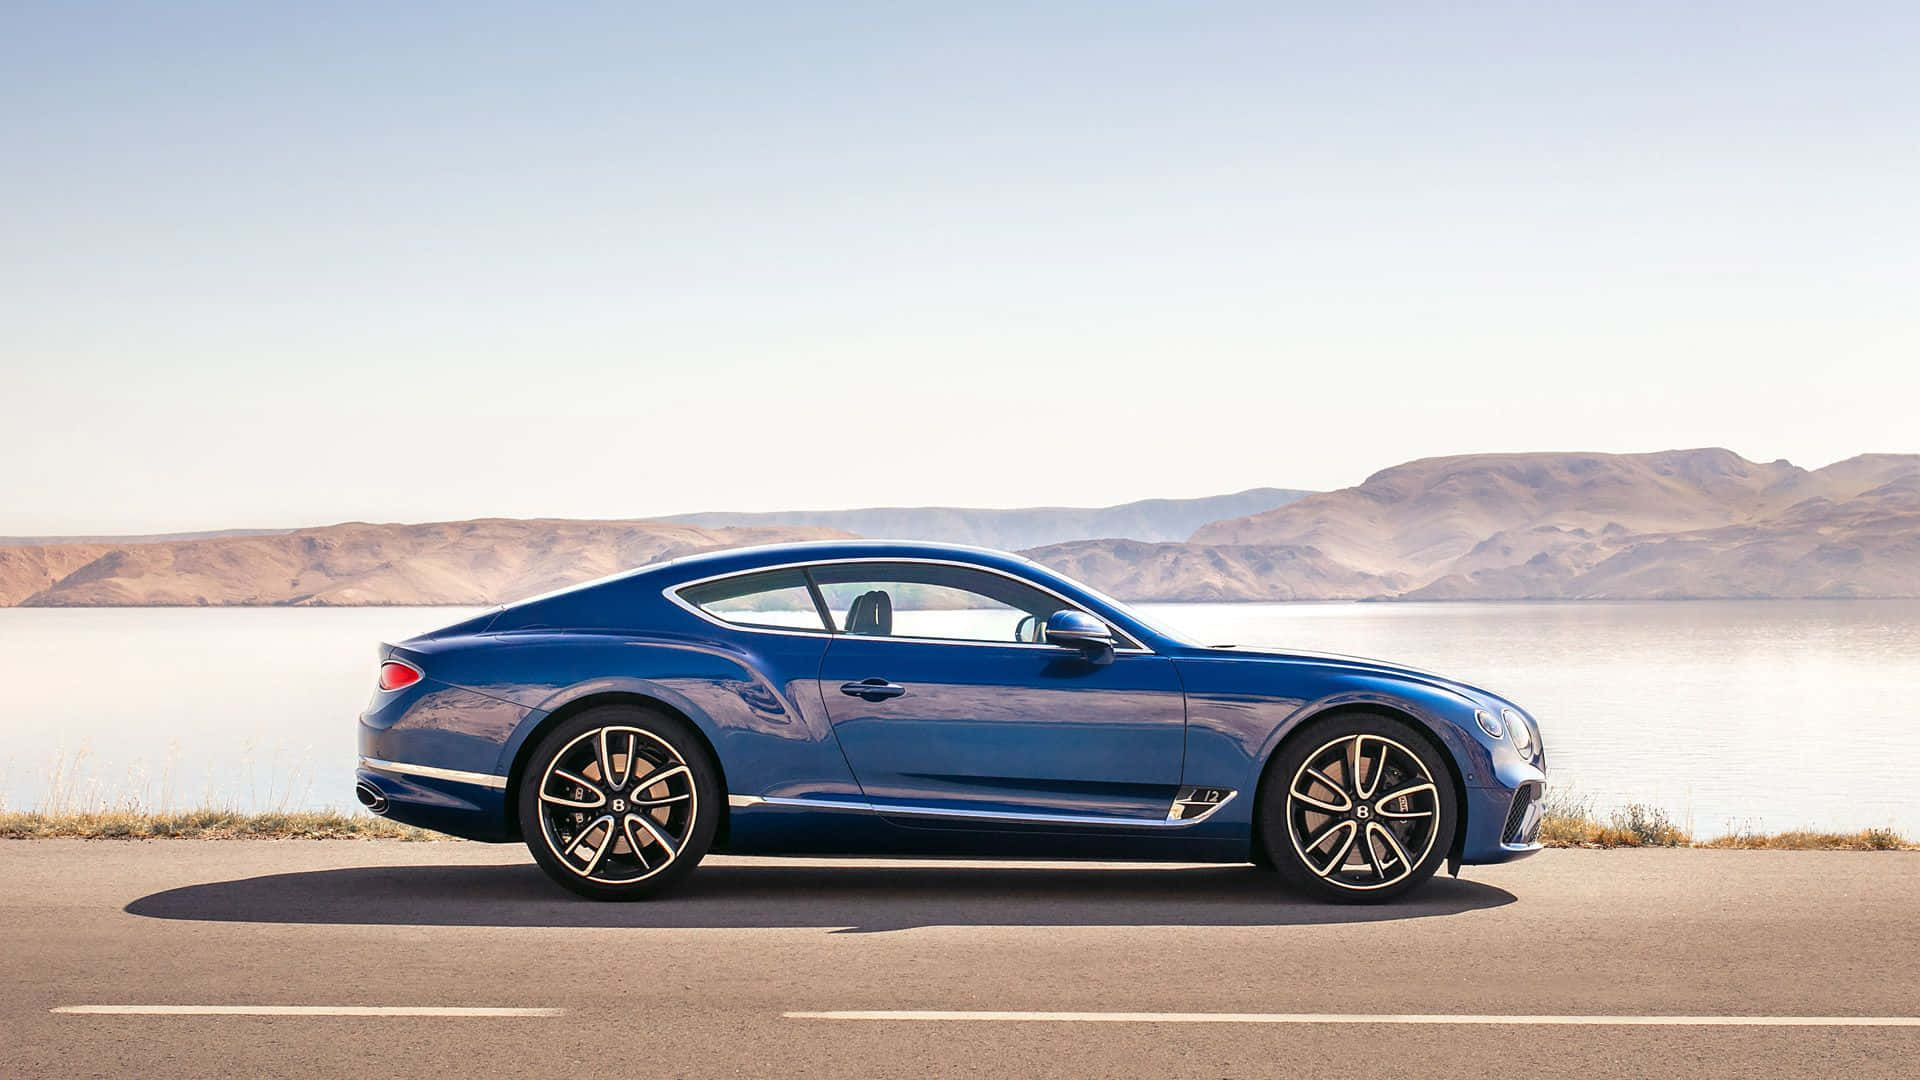 The Definitive Luxury: Bentley